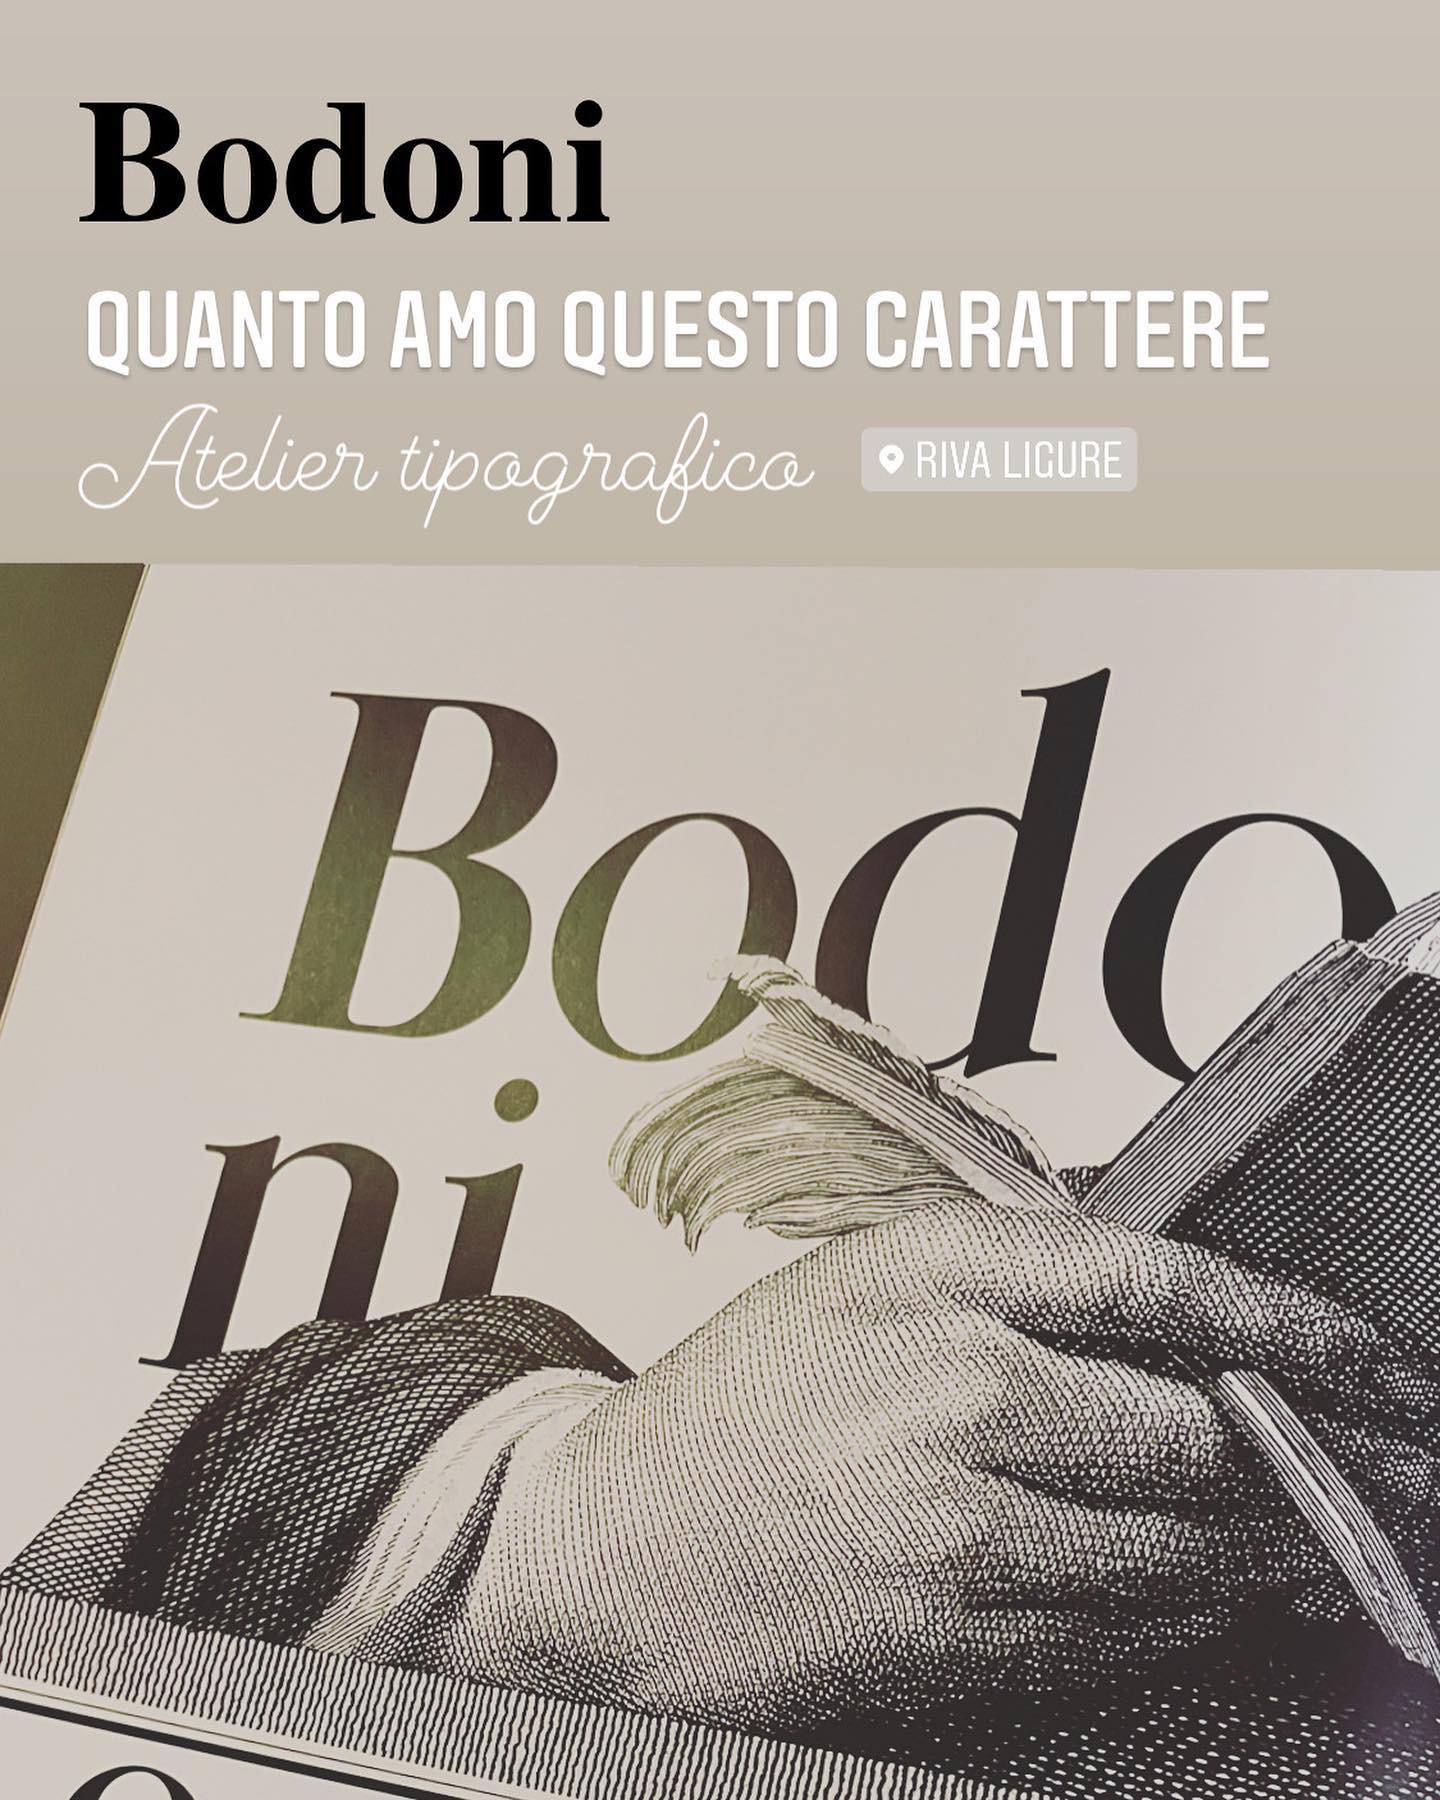 Bodoni, principe dei tipografi